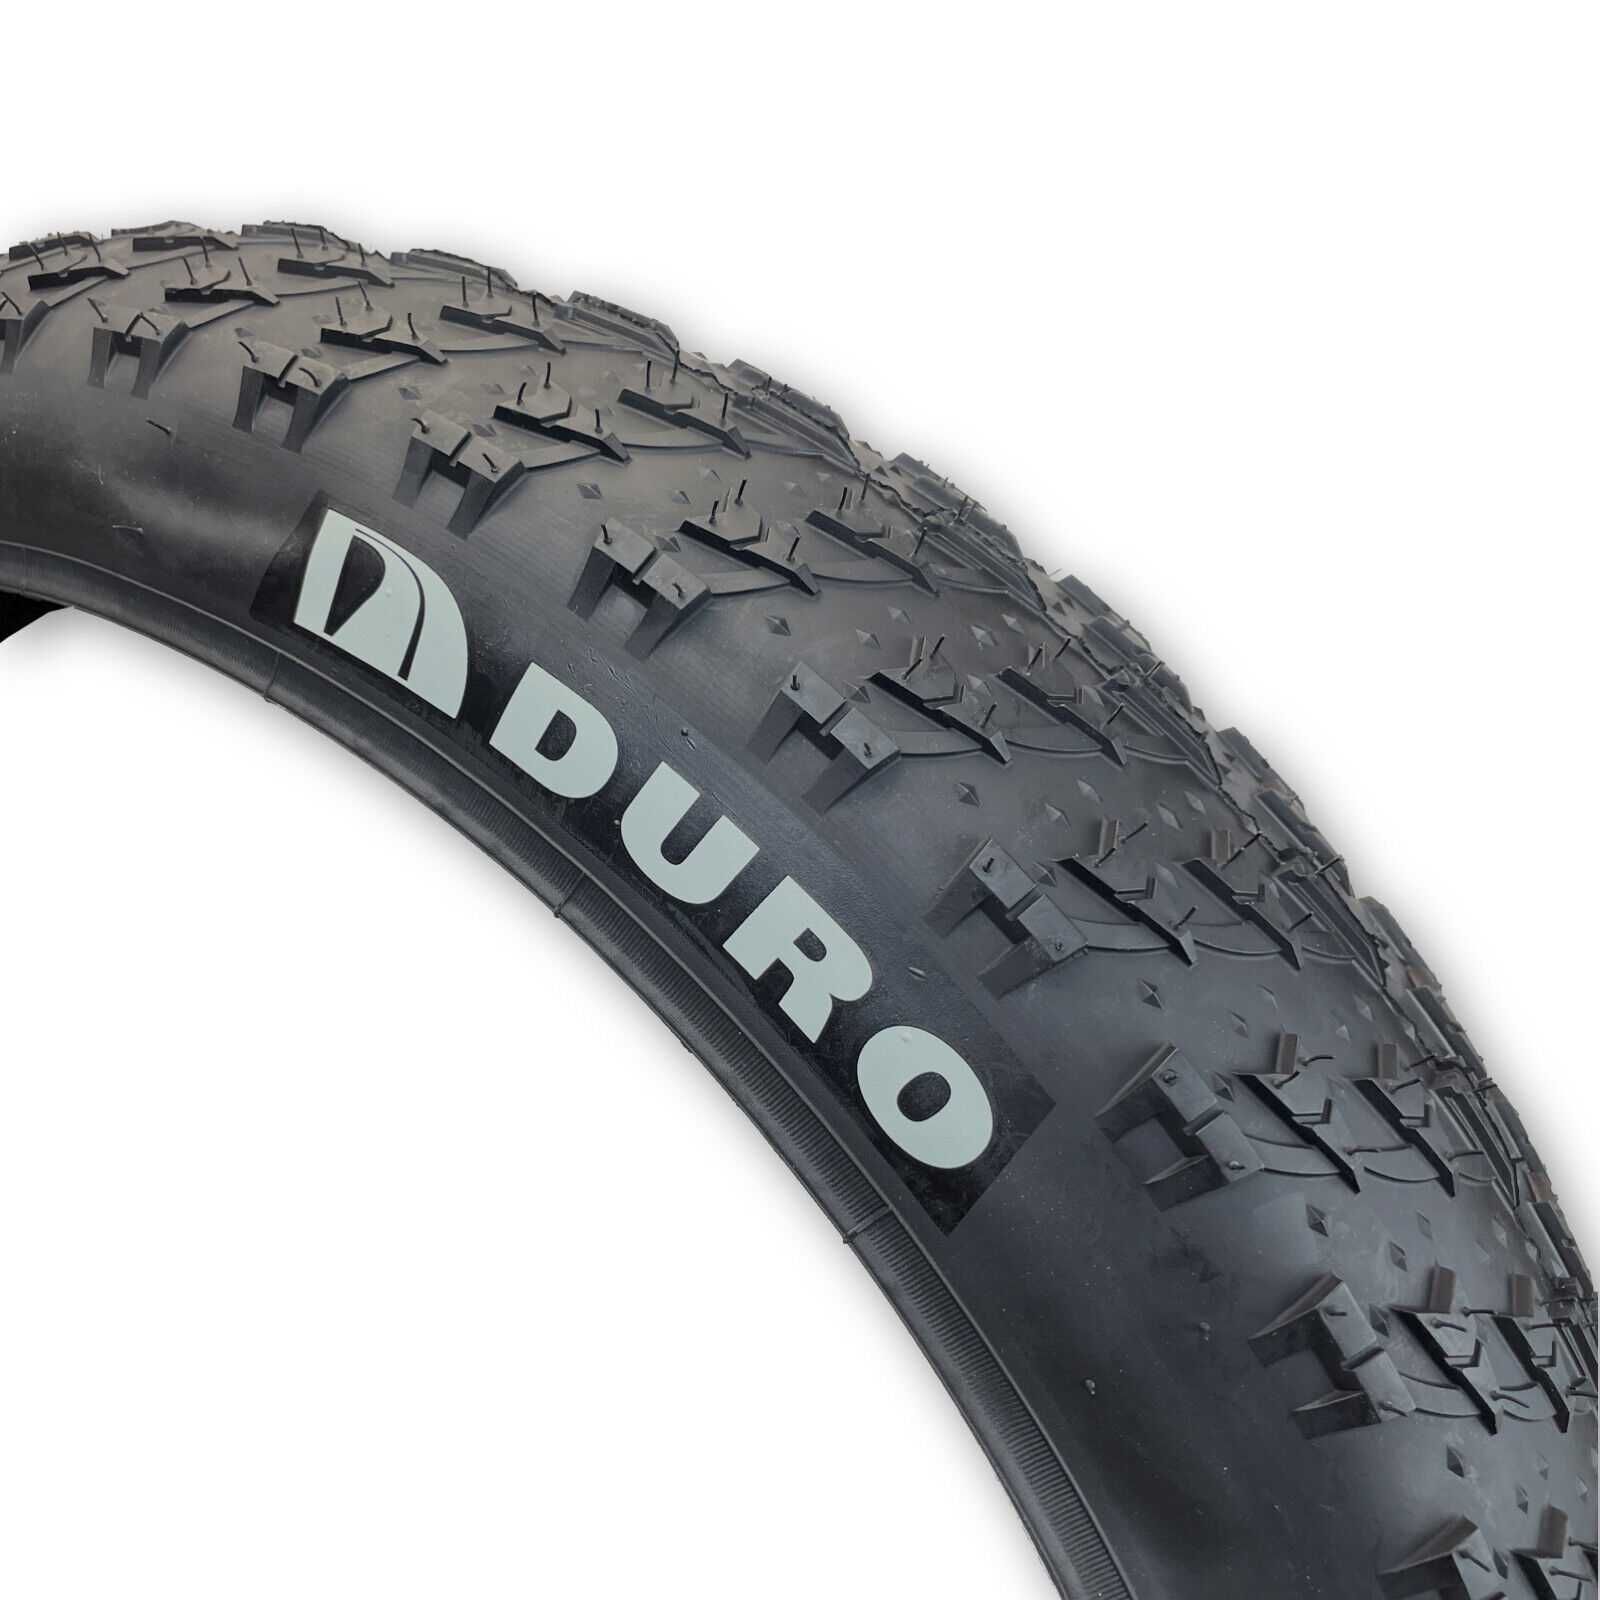 Външна гума за фатбайк велосипед Big D (26 x 4.0) (102-559) черна